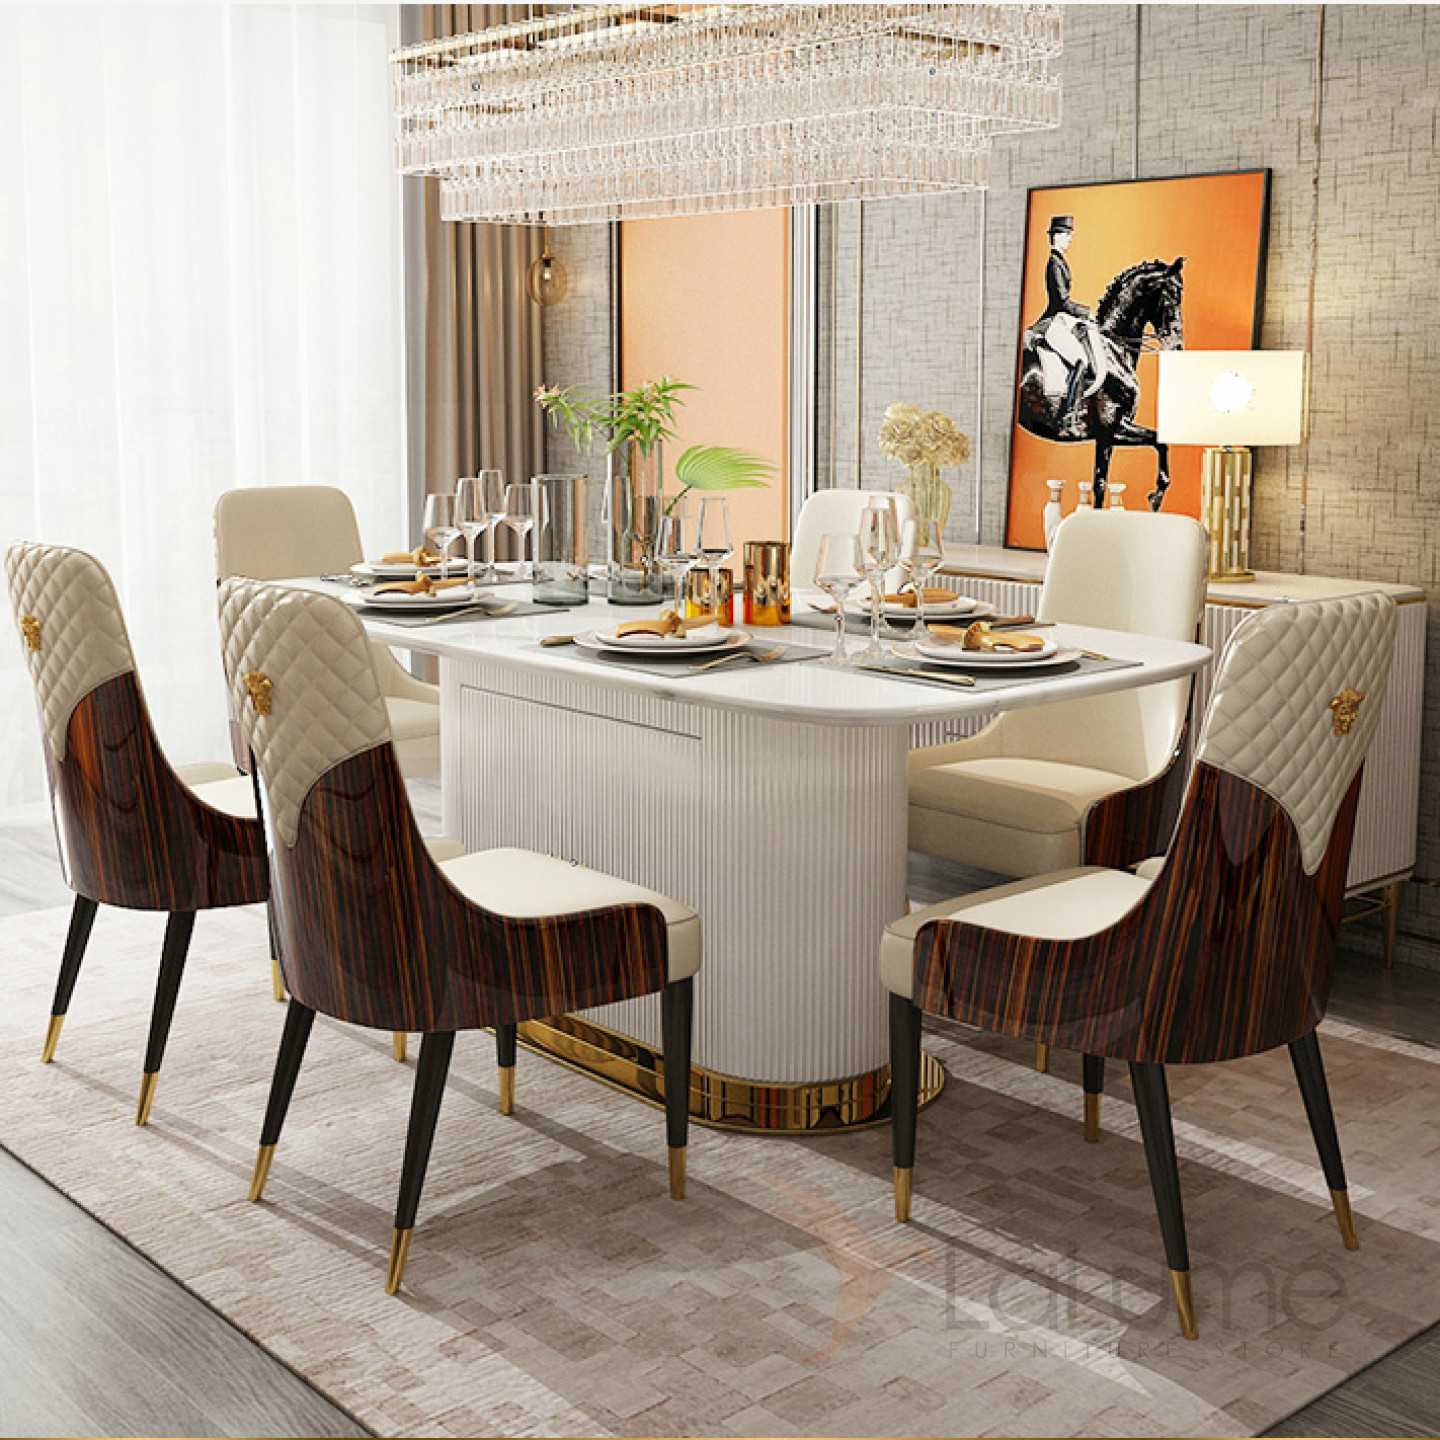 Дизайн кухонного стола. Выдвижной стол Table артикул 642.19.941. Стол обеденный. Современный обеденный стол. Обеденная группа в современном стиле.